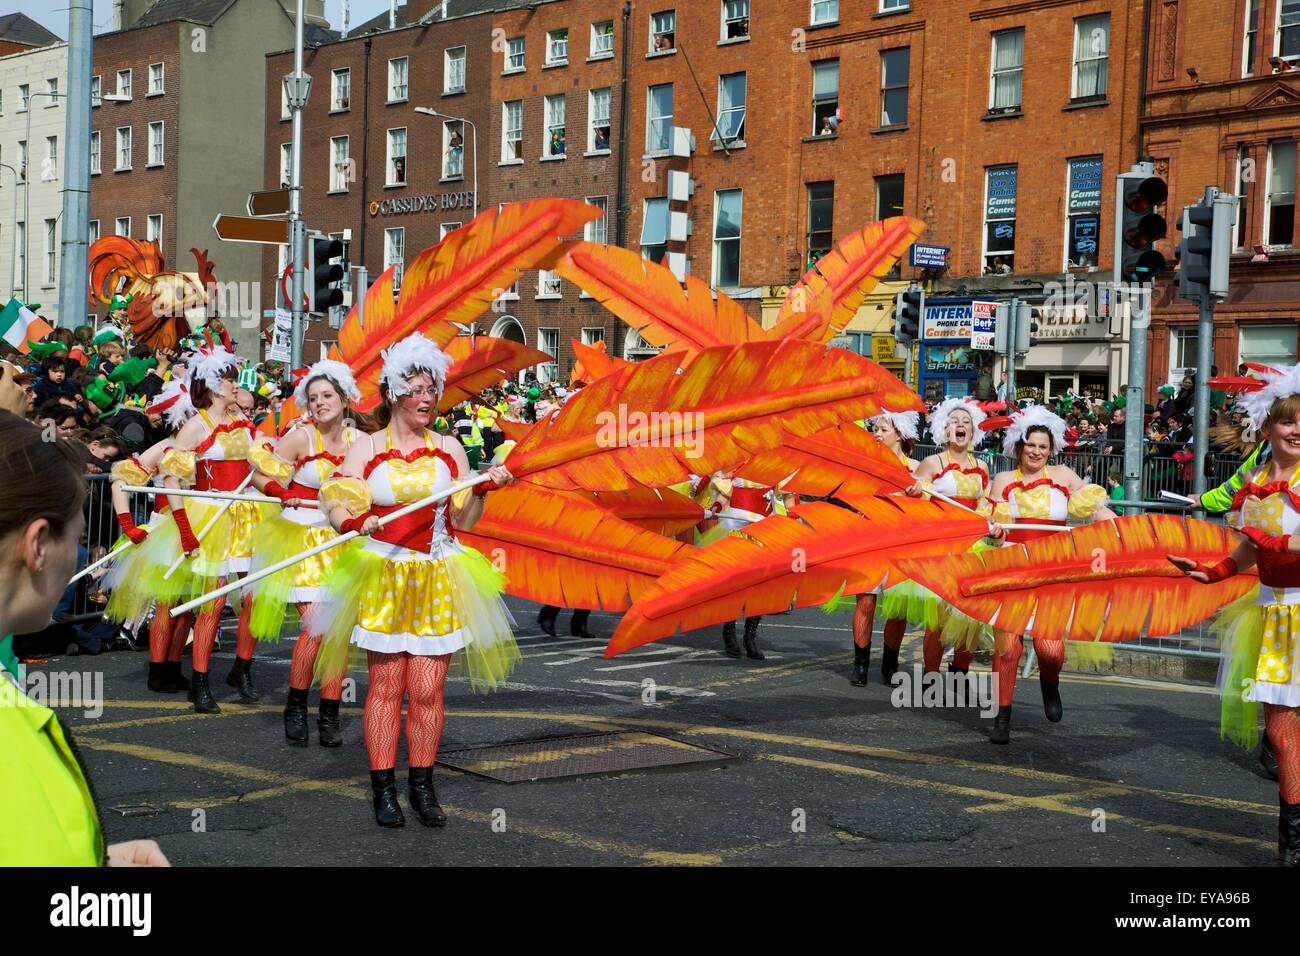 Dublín, Irlanda; la mujer en traje de baile con grandes plumas como parte de un desfile en la calle O'CONNELL Foto de stock